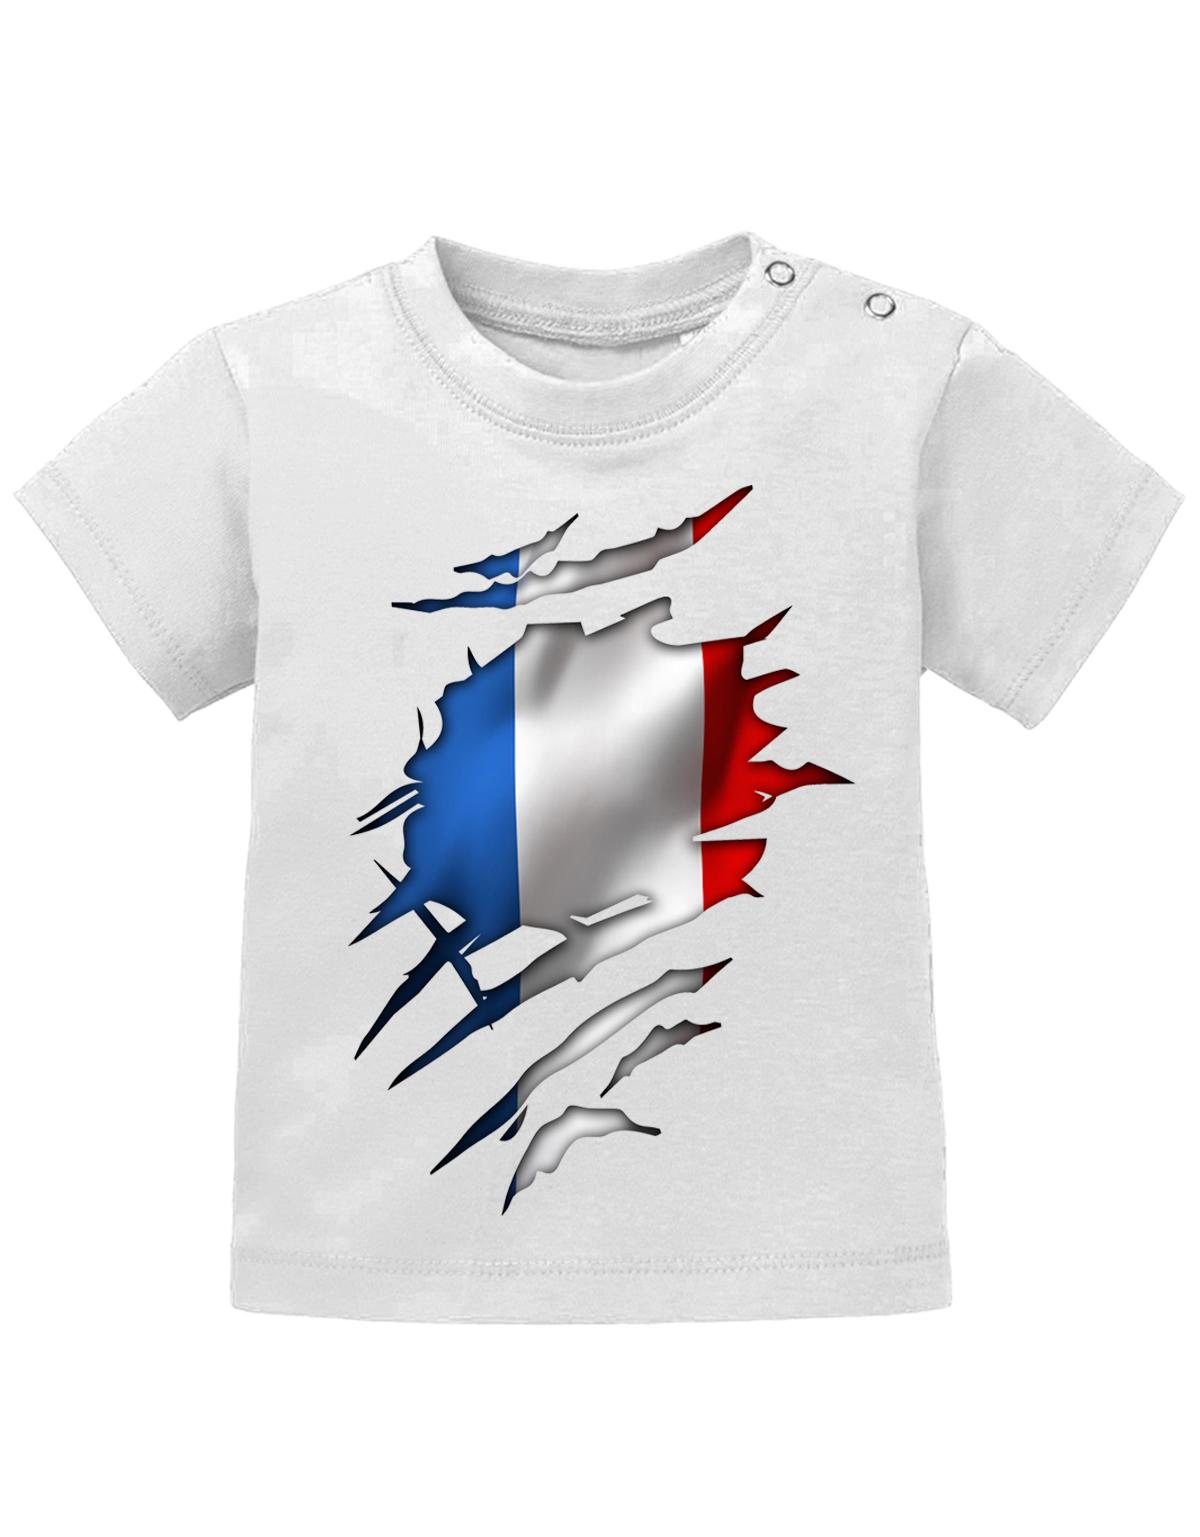 Frankreich T Shirt für Junge und Mädchen. Französische Flagge Design aufgerissen, damit man sieht, dass ein Franzose im Shirt steckt.